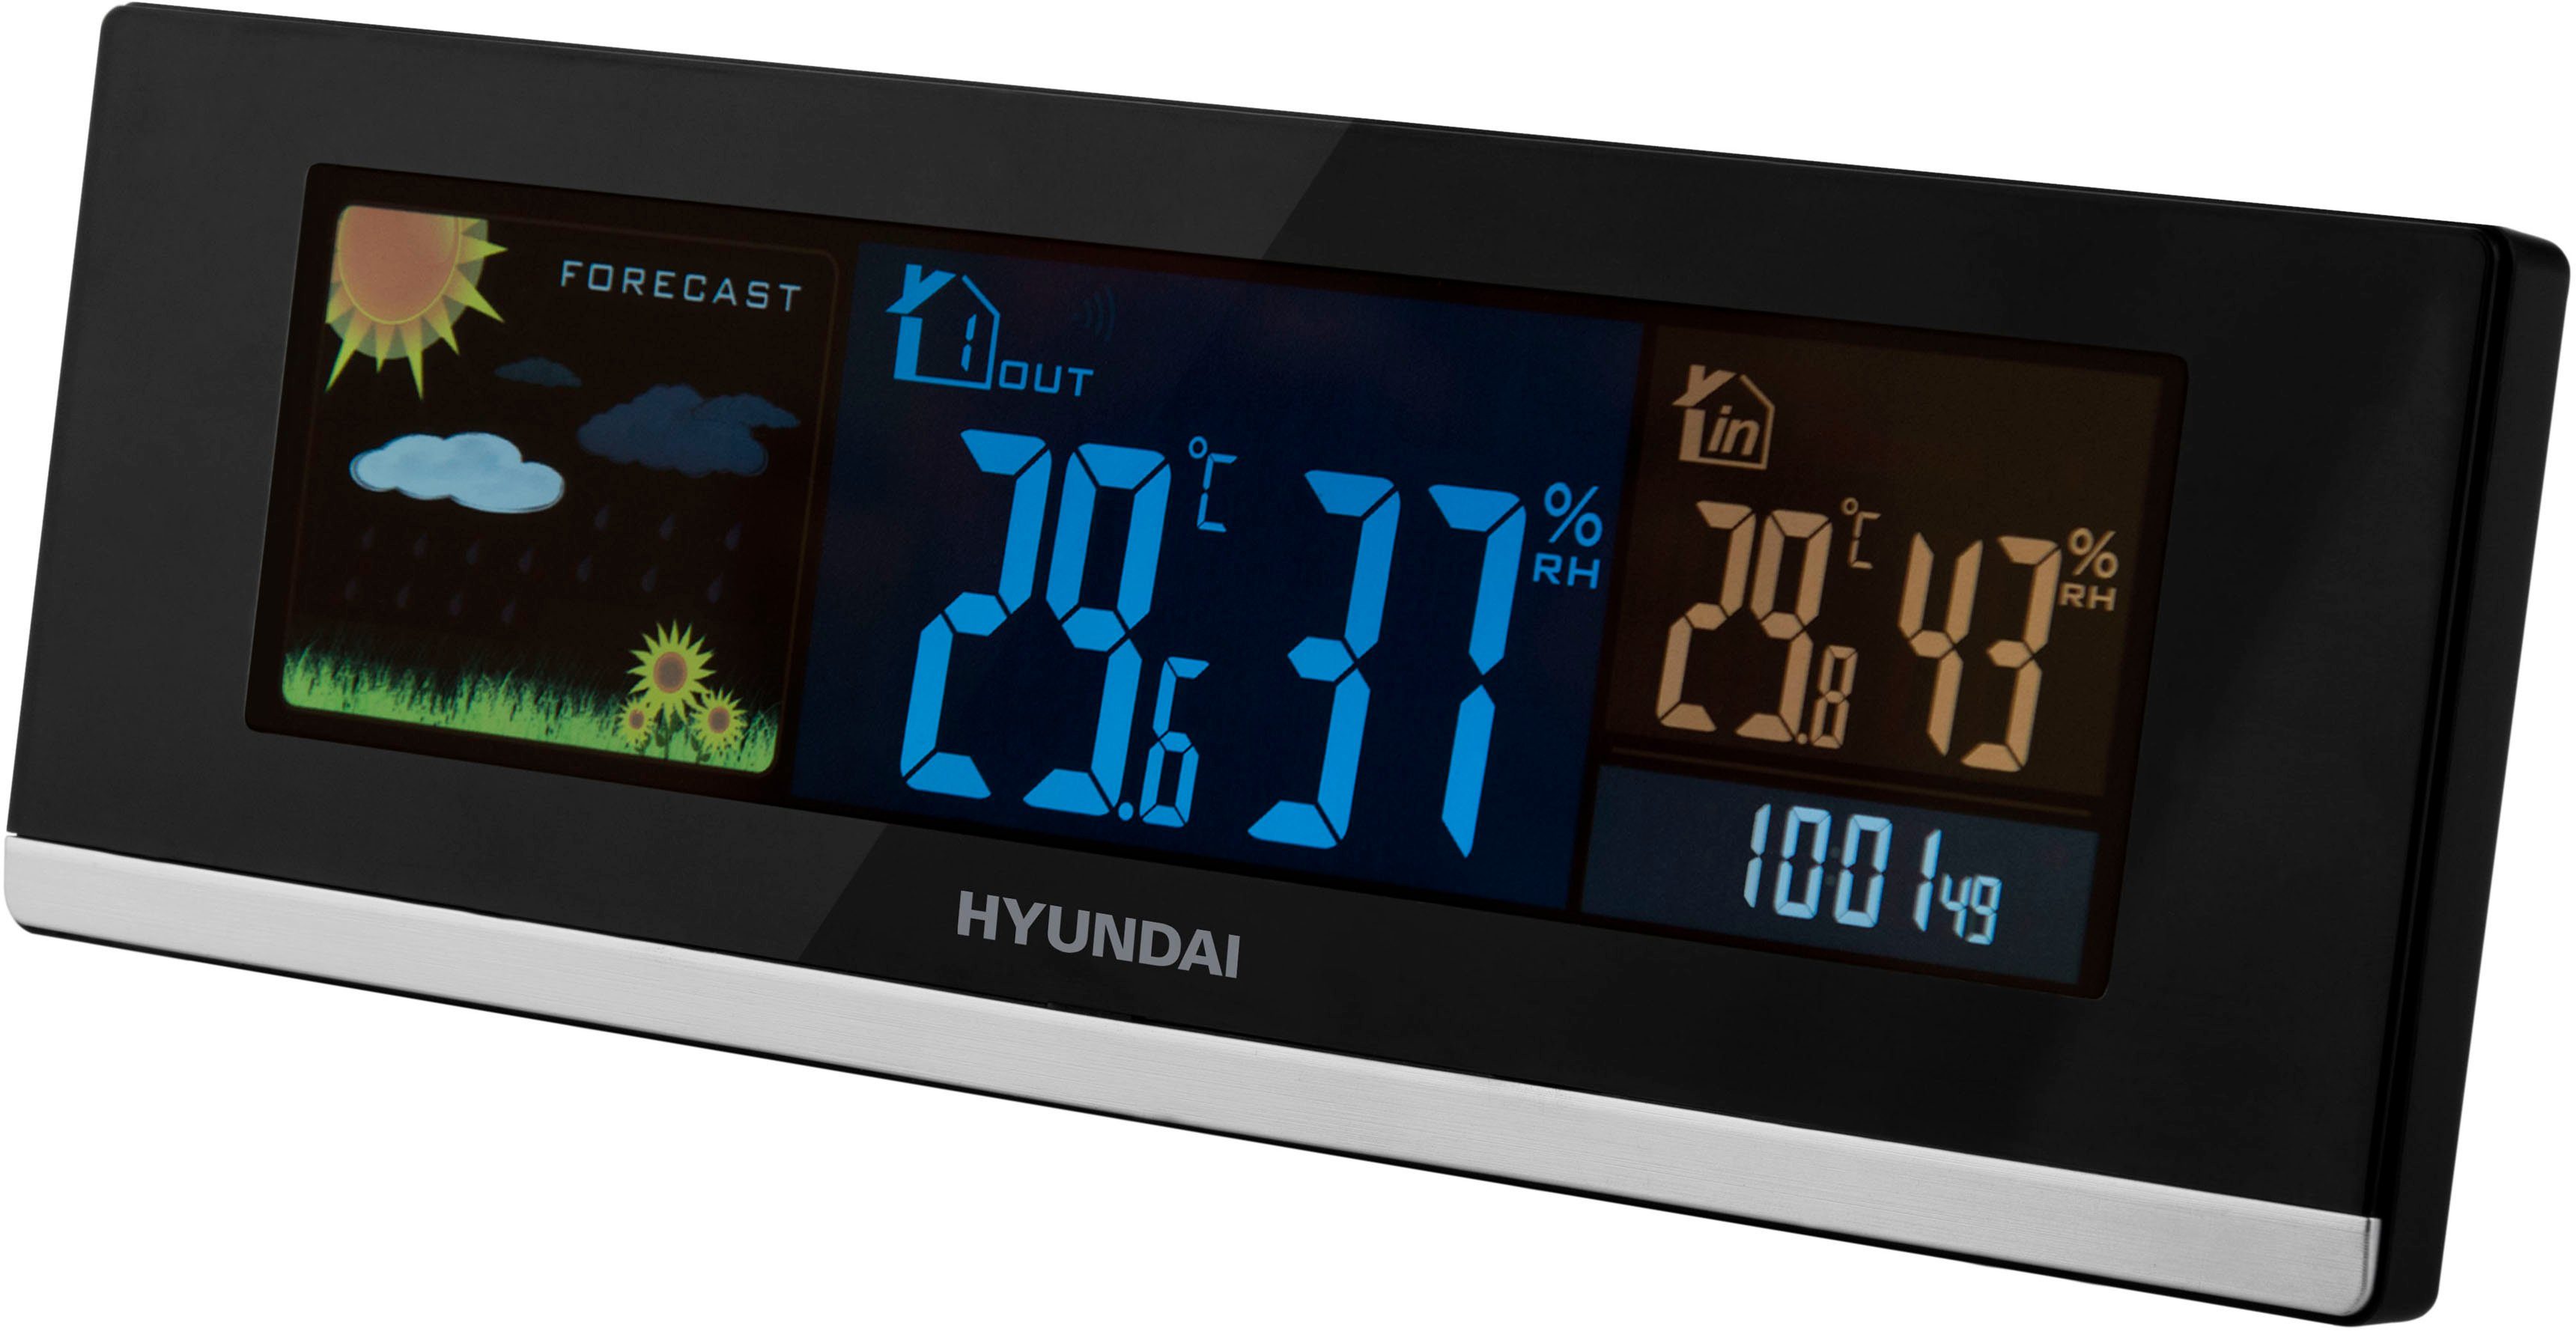 Außensensor, Wetterstation WS Hyundai farbiges Display) Hyundai 2468 (mit